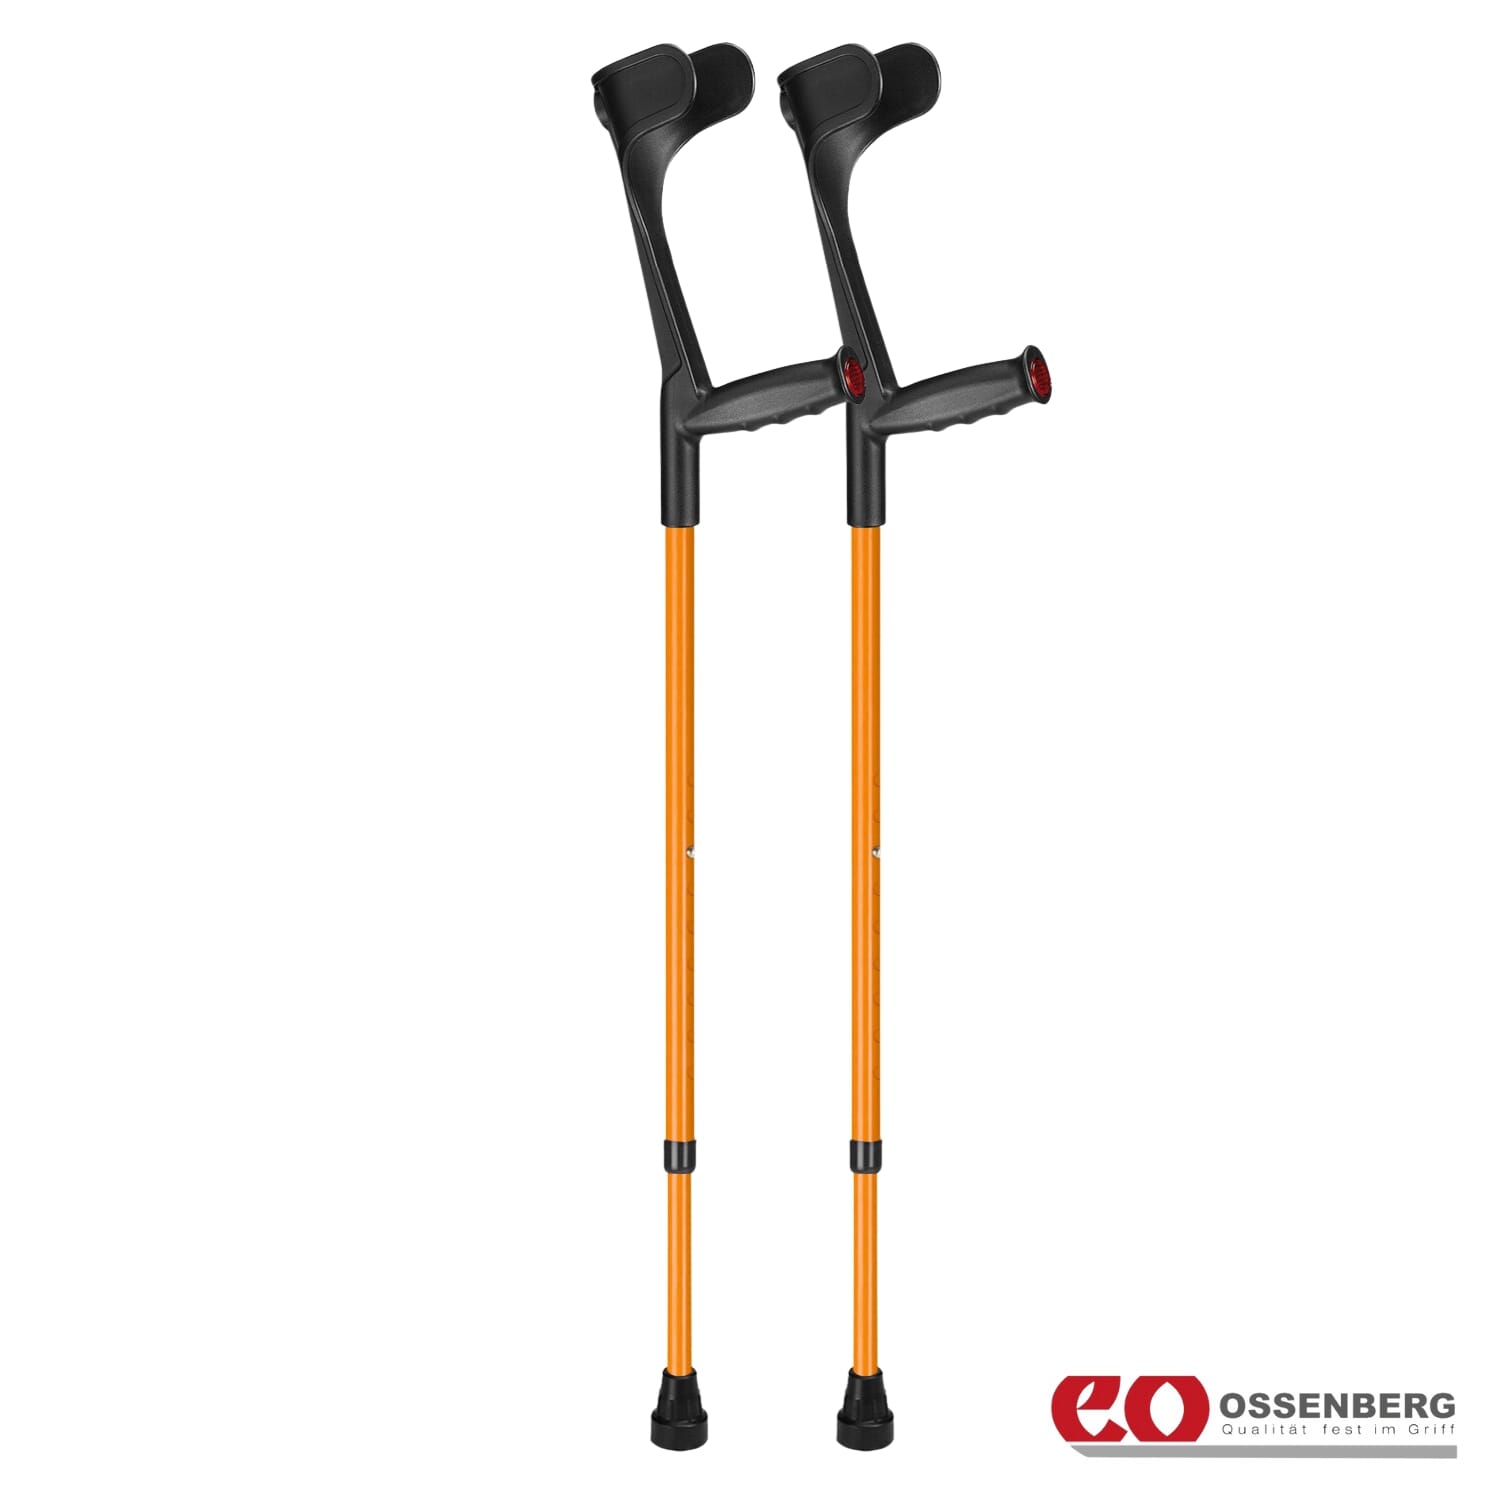 View Ossenberg Open Cuff Soft Grip Crutches Orange Pair information